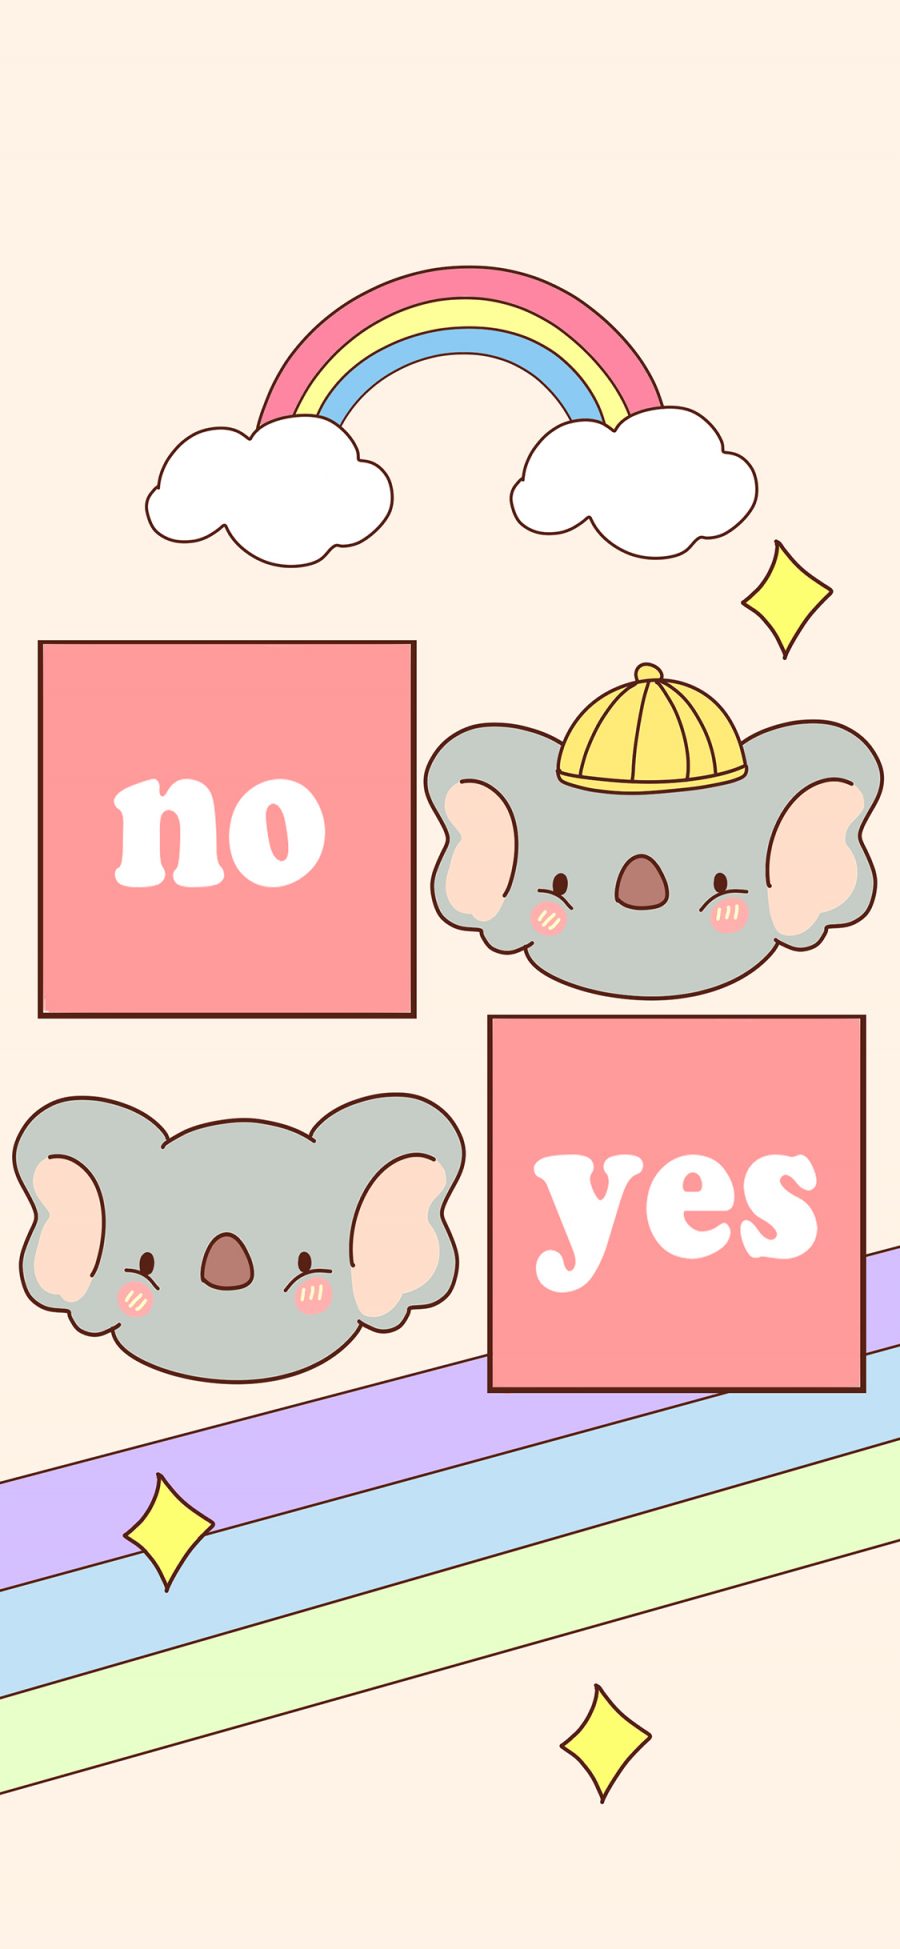 [2436×1125]卡通 色彩 彩虹 小象 no yes 苹果手机动漫壁纸图片